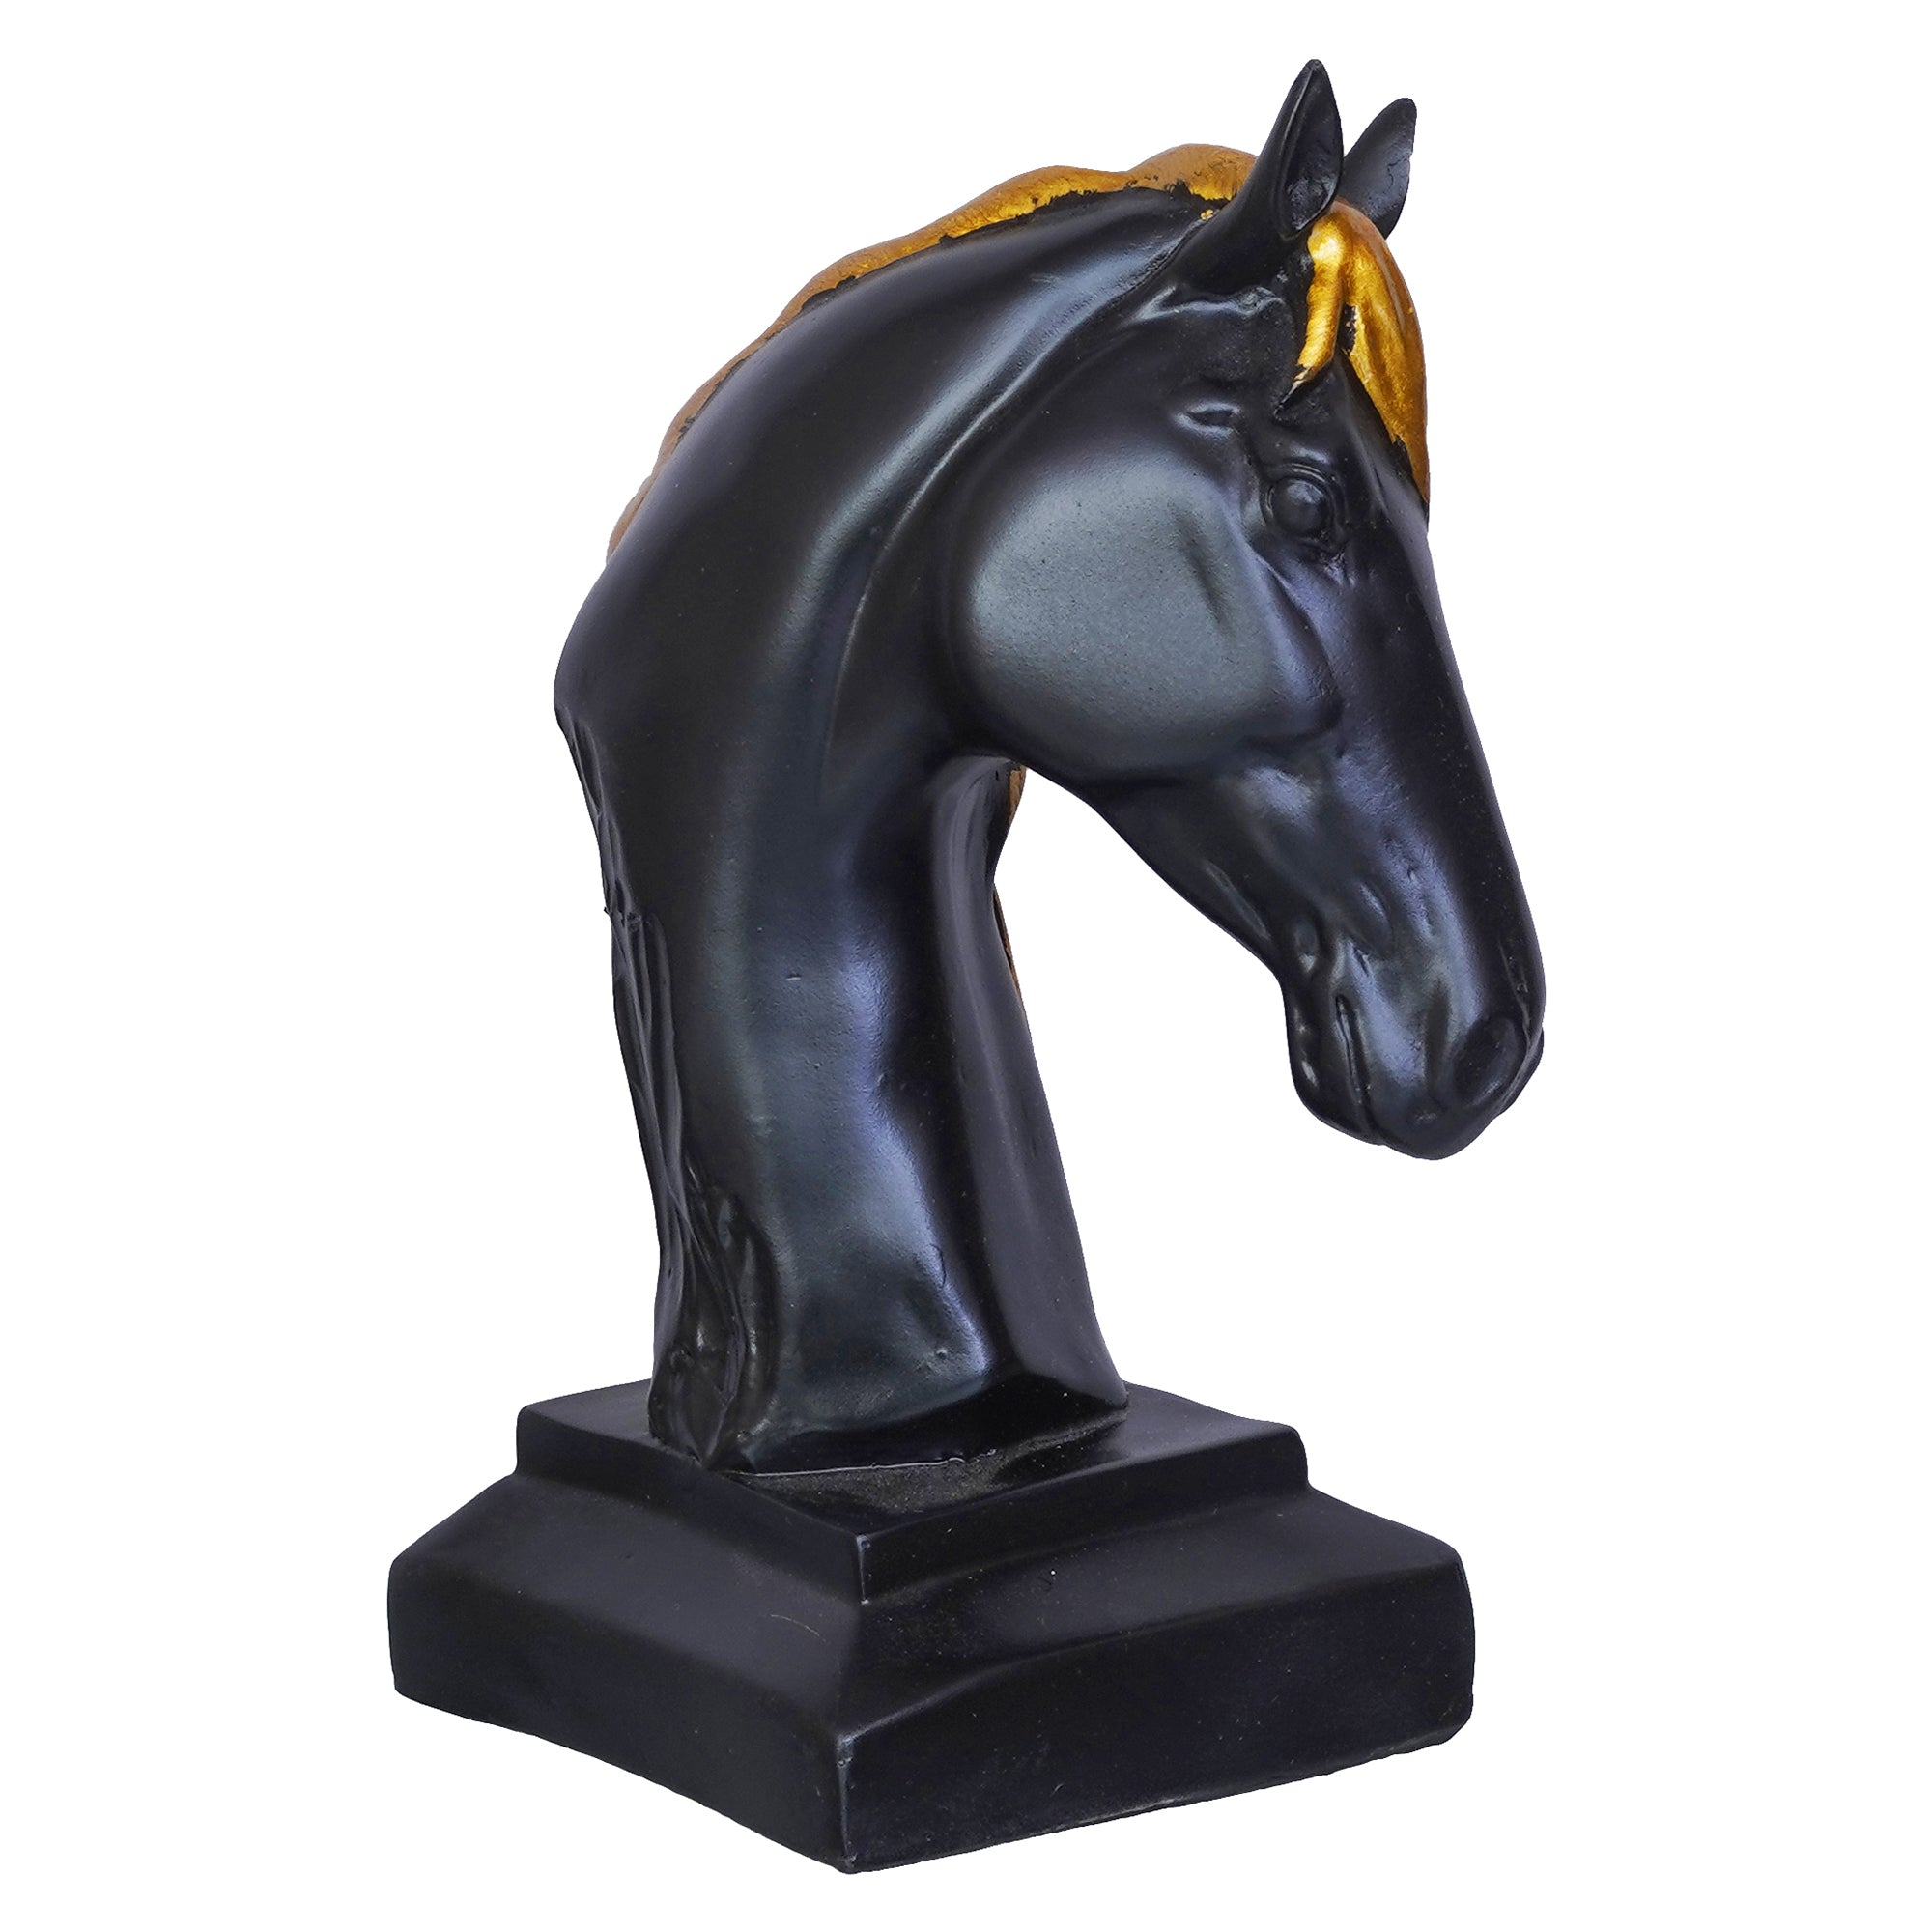 Black Horse Head Statue with Golden Hair Animal Figurine Showpiece 8